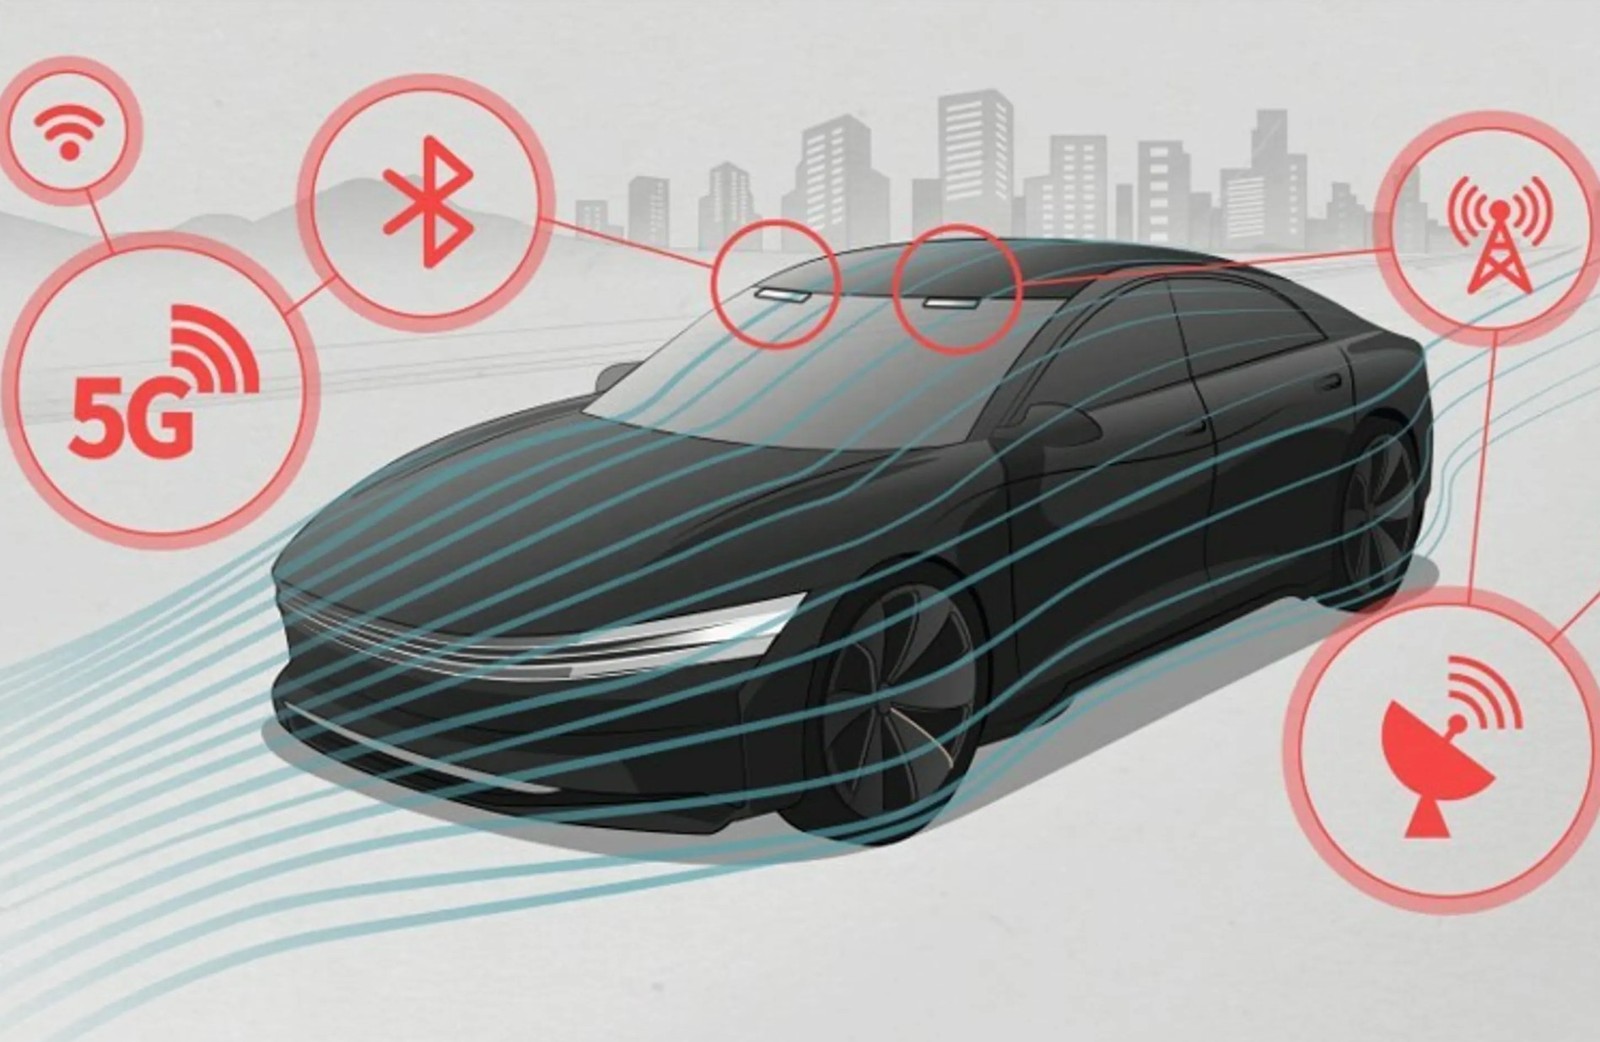 LG chce zrewolucjonizować nowoczesne samochody. Będą pełne techu i bez brzydkich dodatków